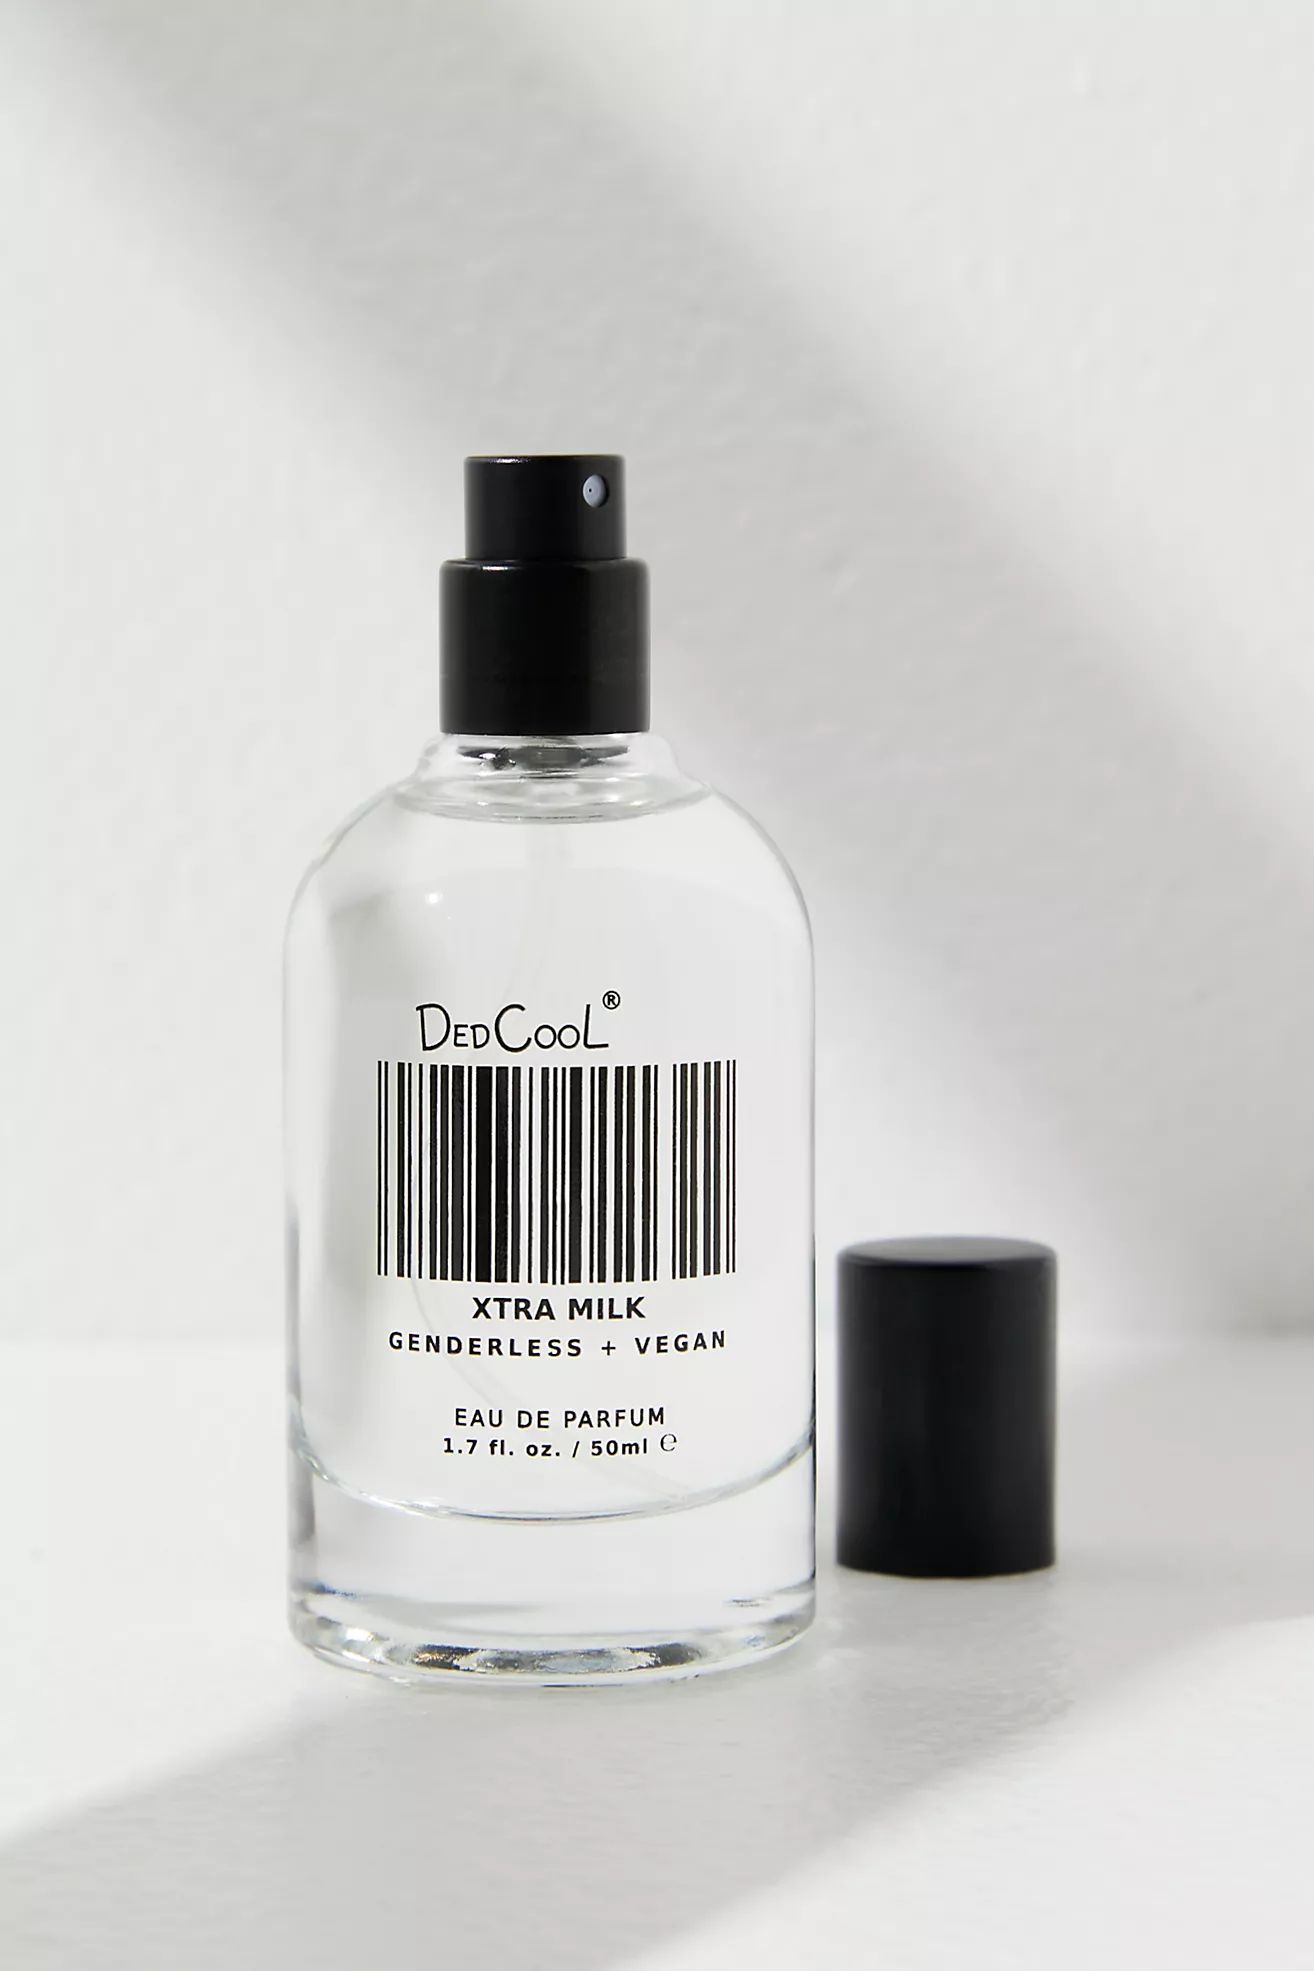 DedCool Xtra Milk Eau De Parfum | Free People (Global - UK&FR Excluded)